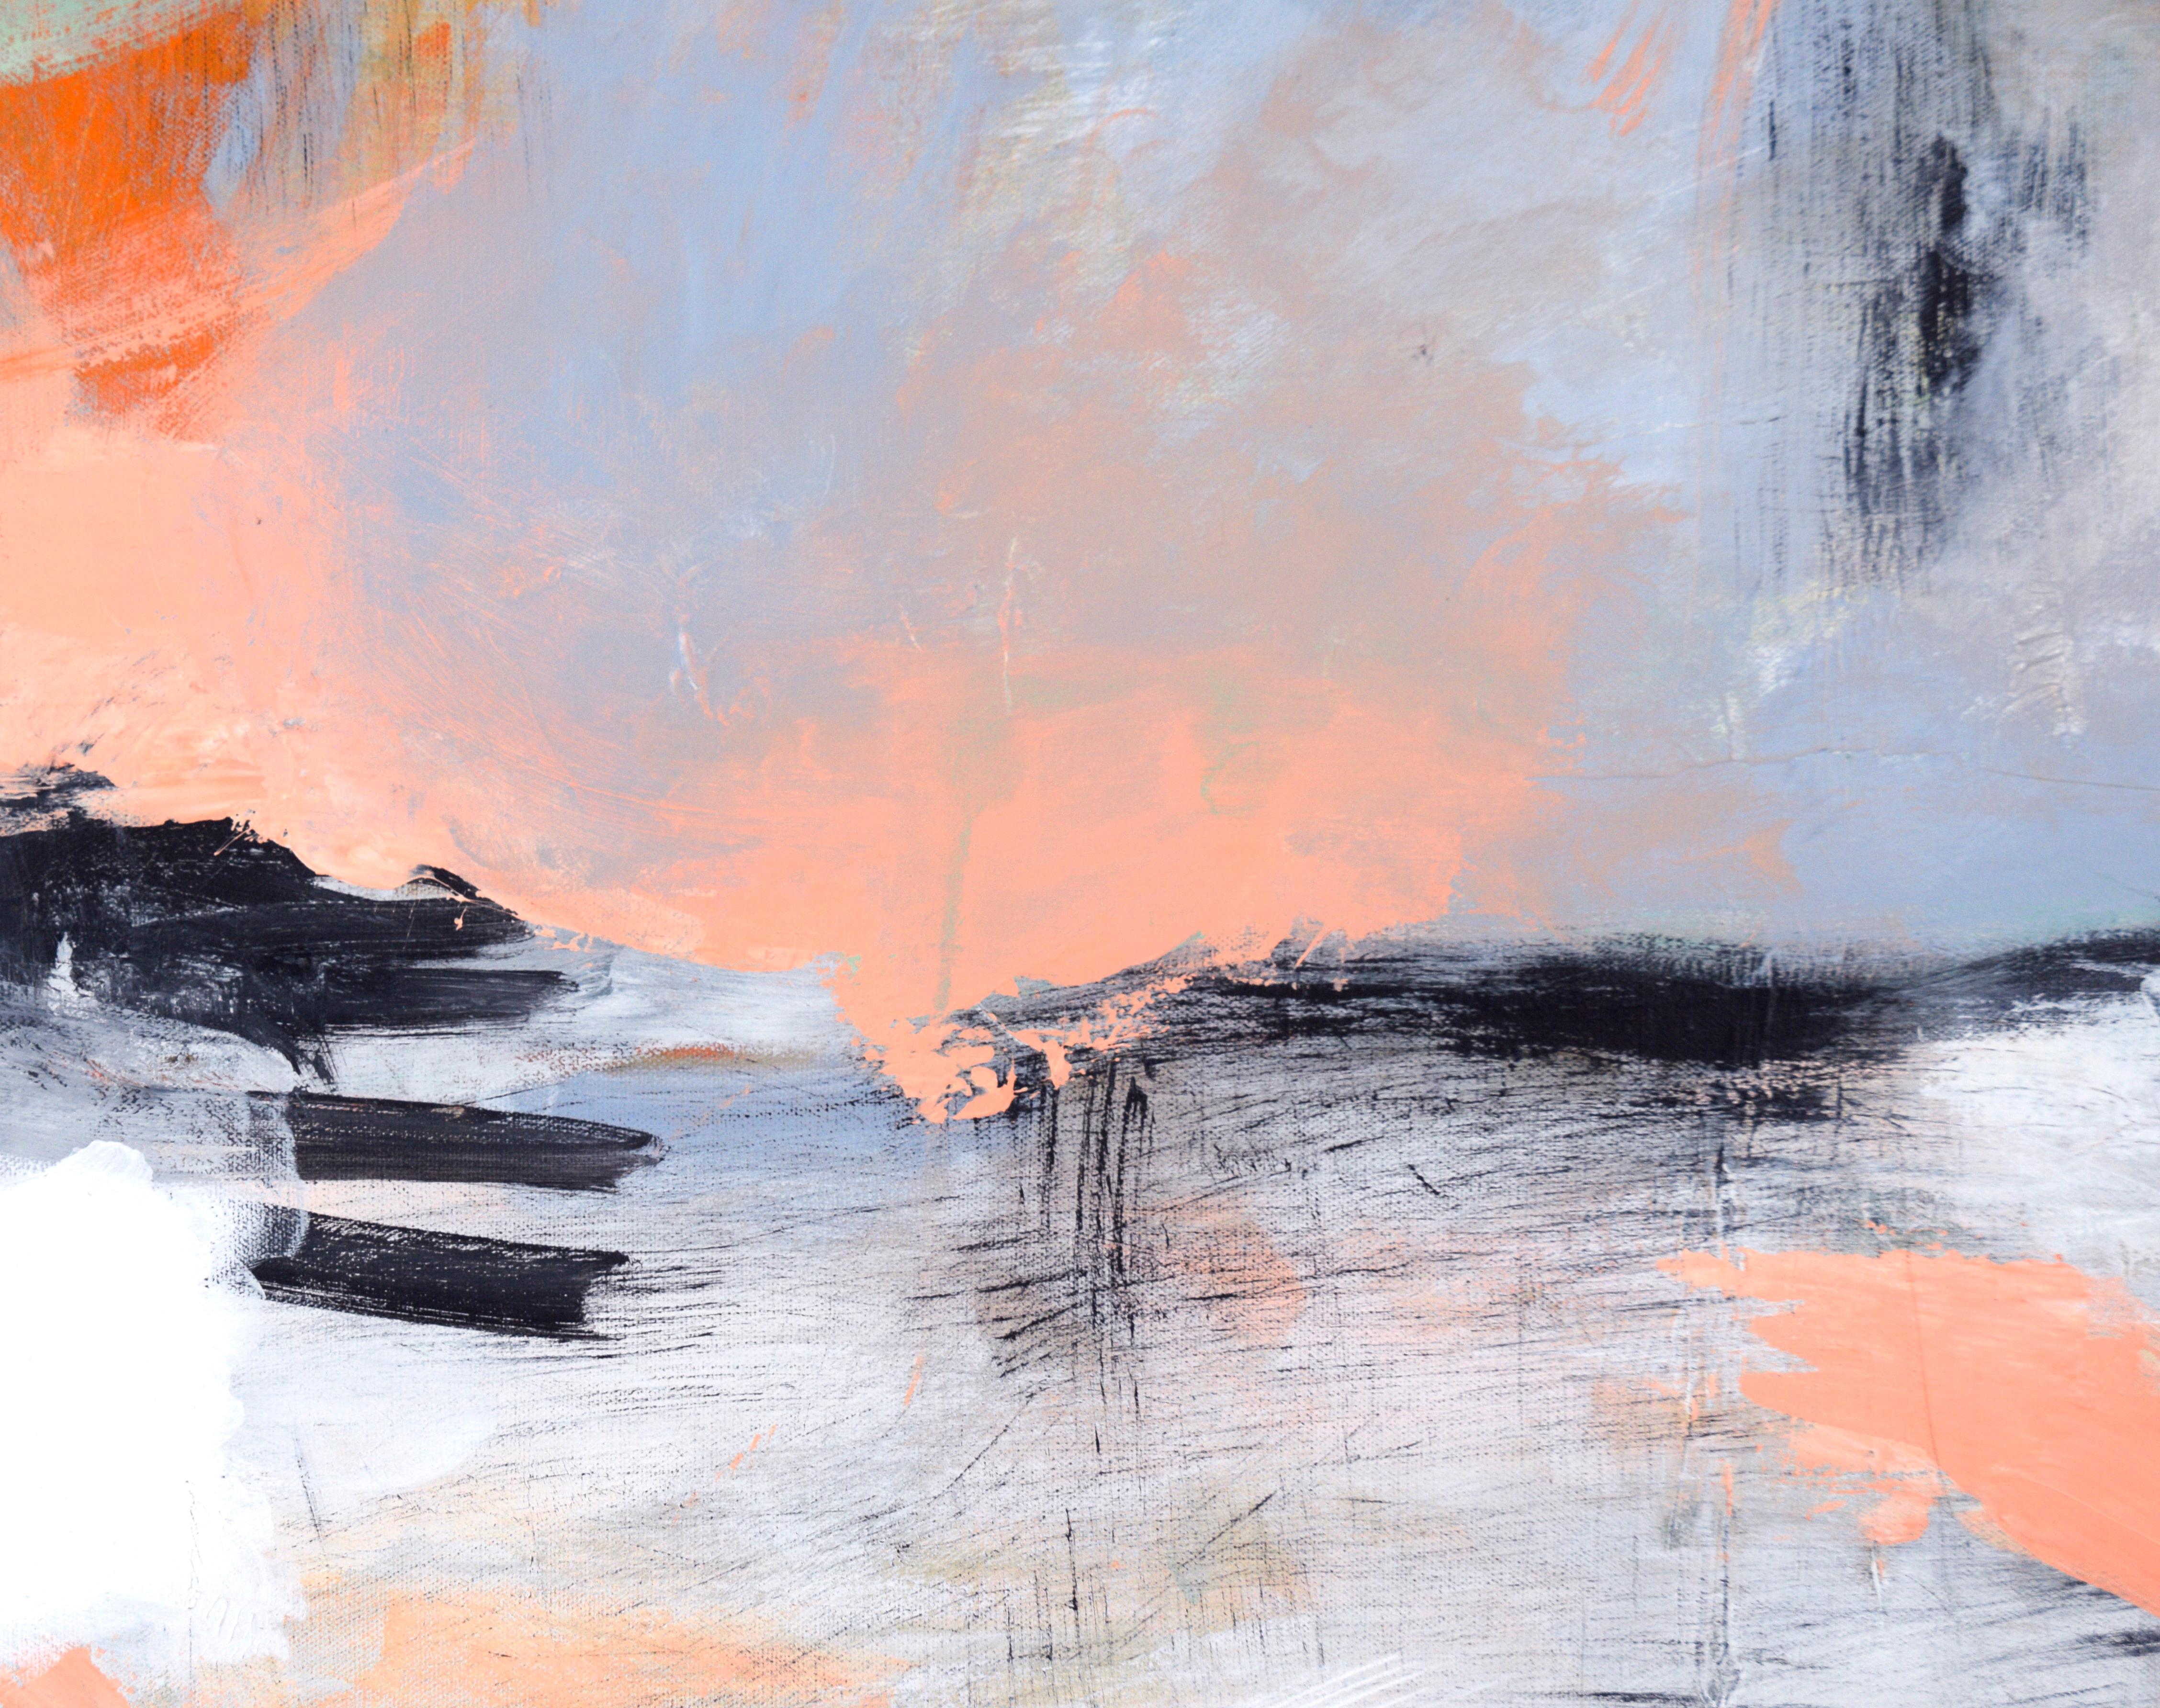 Paysage vertical abstrait en acrylique sur toile

Paysage abstrait ludique d'un artiste inconnu (20e siècle). Cette pièce est divisée en deux sections, impliquant le sol et le ciel. Le ciel est de multiples couleurs, dont le vert, les nuances